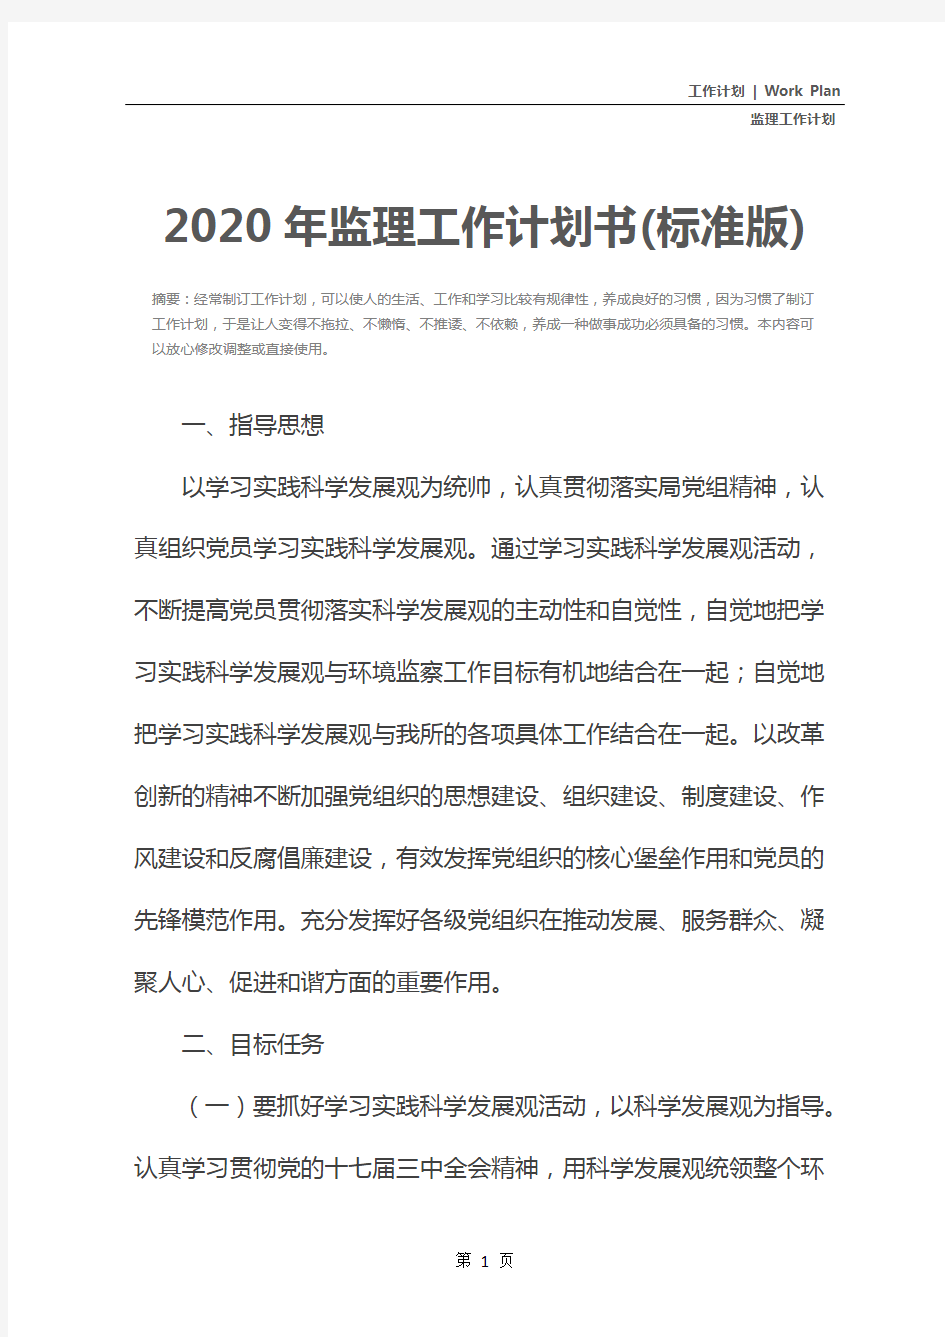 2020年监理工作计划书(标准版)